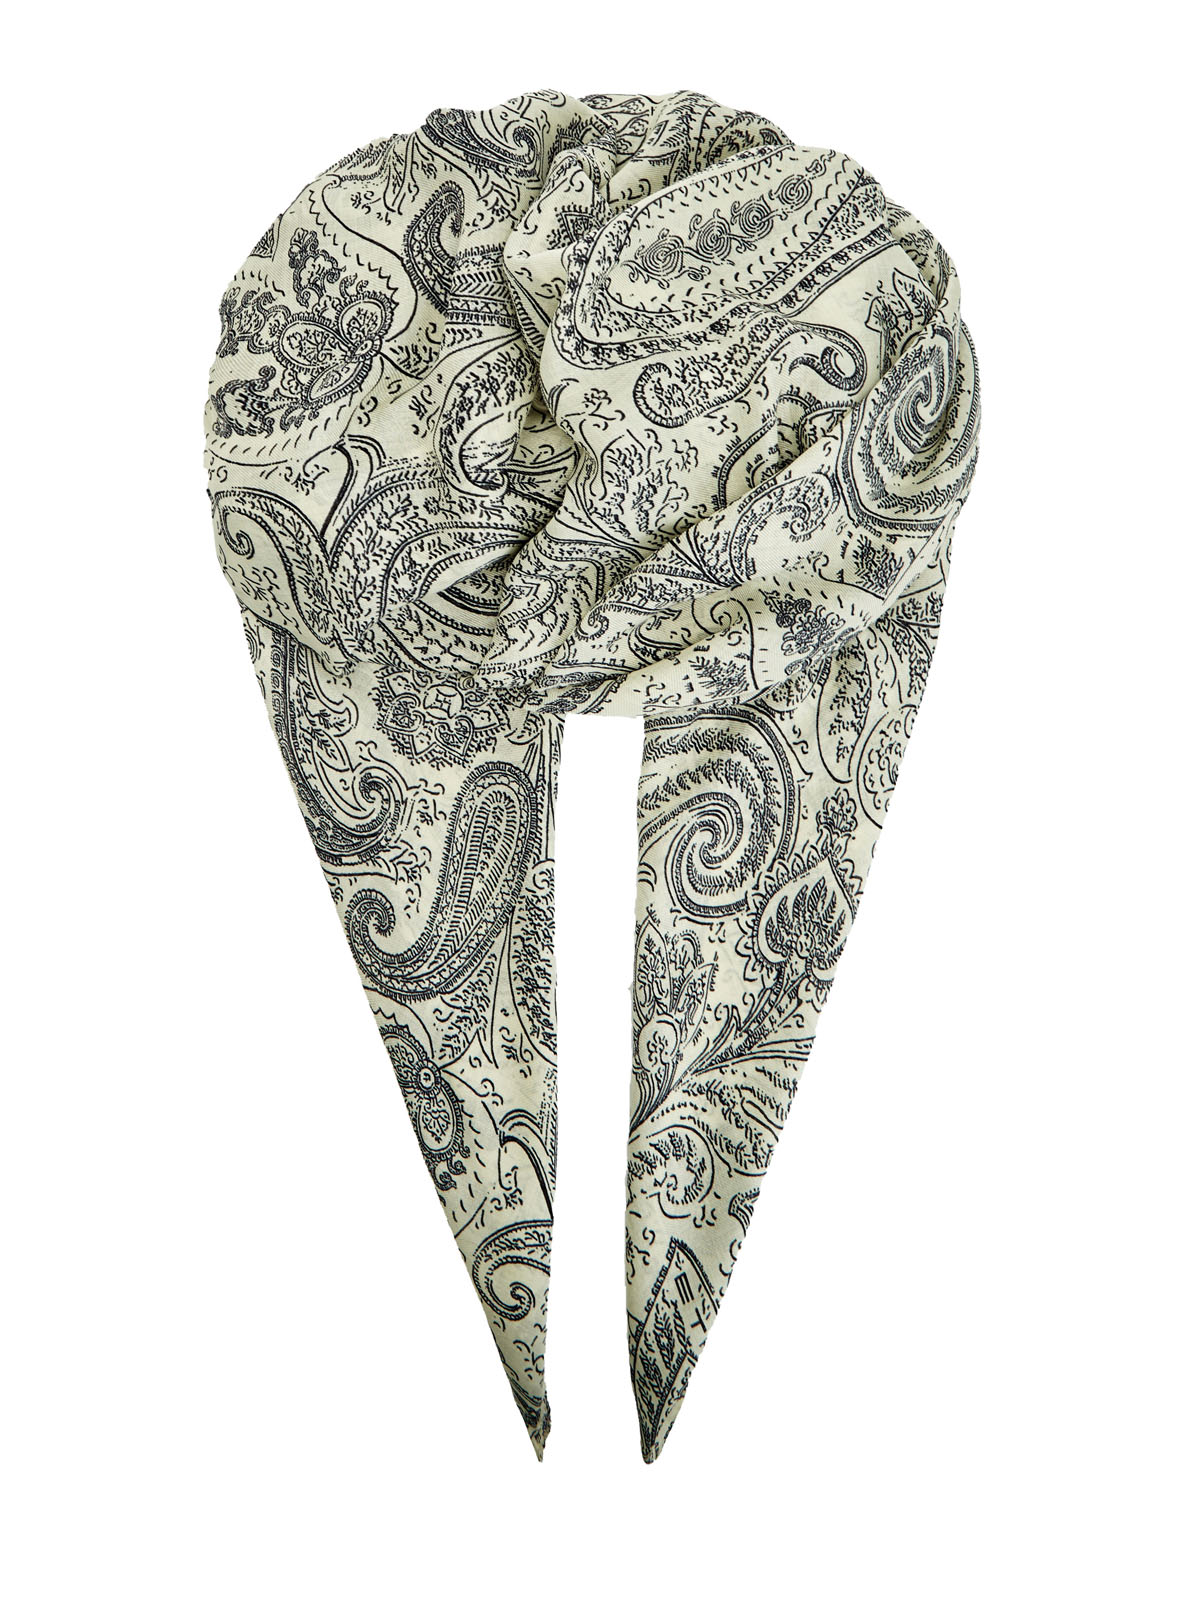 Легкая шаль из шерсти и шелка с фирменным паттерном ETRO, цвет бежевый, размер 42;43;44;45